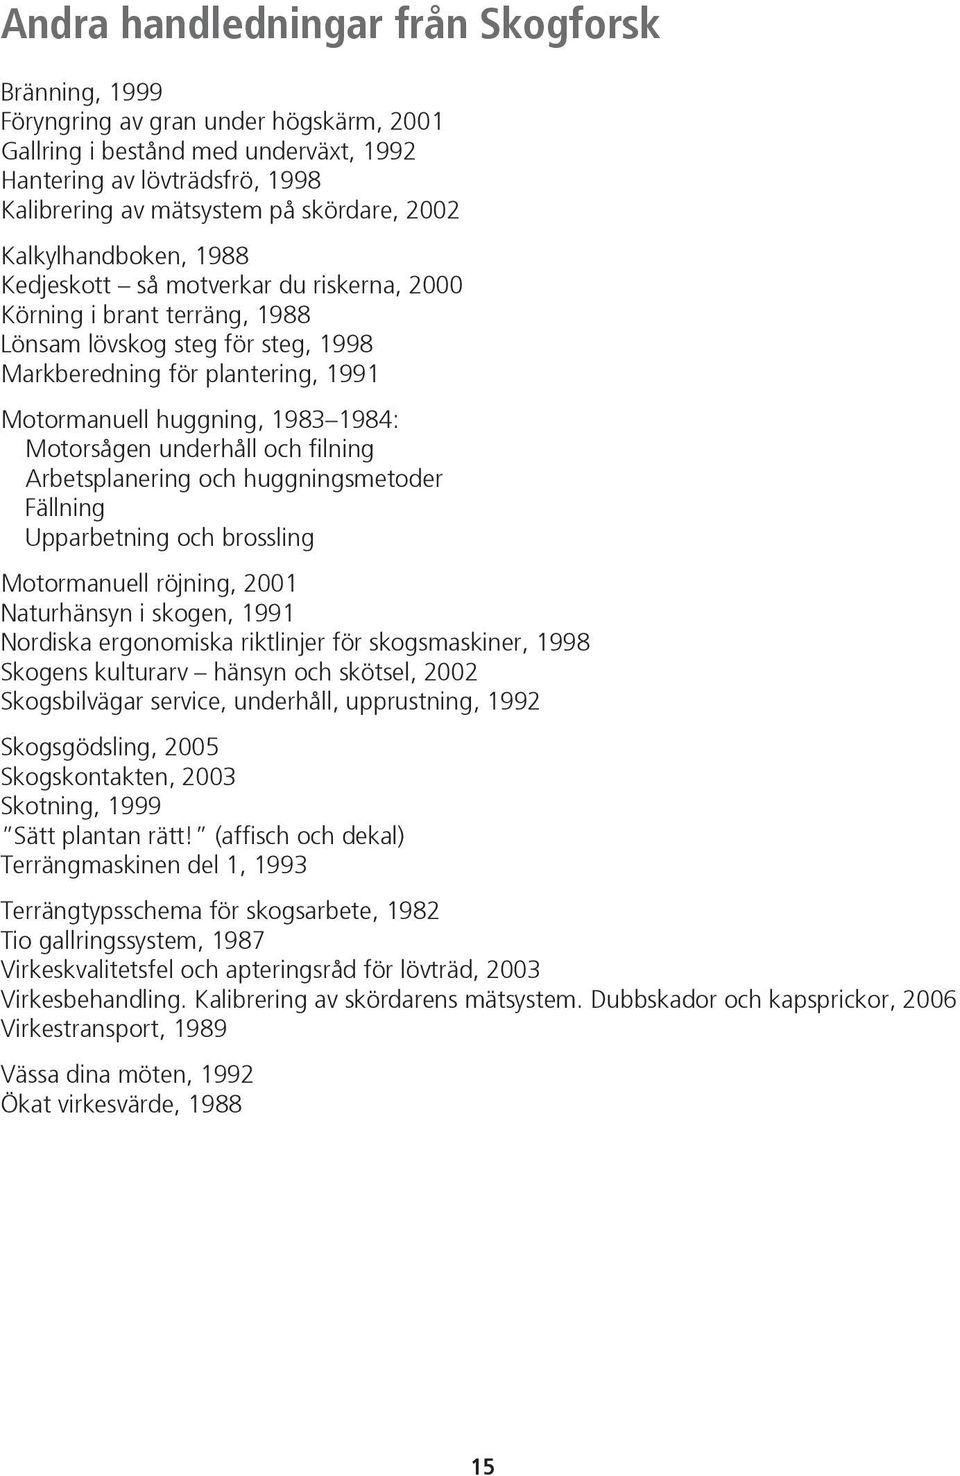 1984: Motorsågen underhåll och filning Arbetsplanering och huggningsmetoder Fällning Upparbetning och brossling Motormanuell röjning, 2001 Naturhänsyn i skogen, 1991 Nordiska ergonomiska riktlinjer